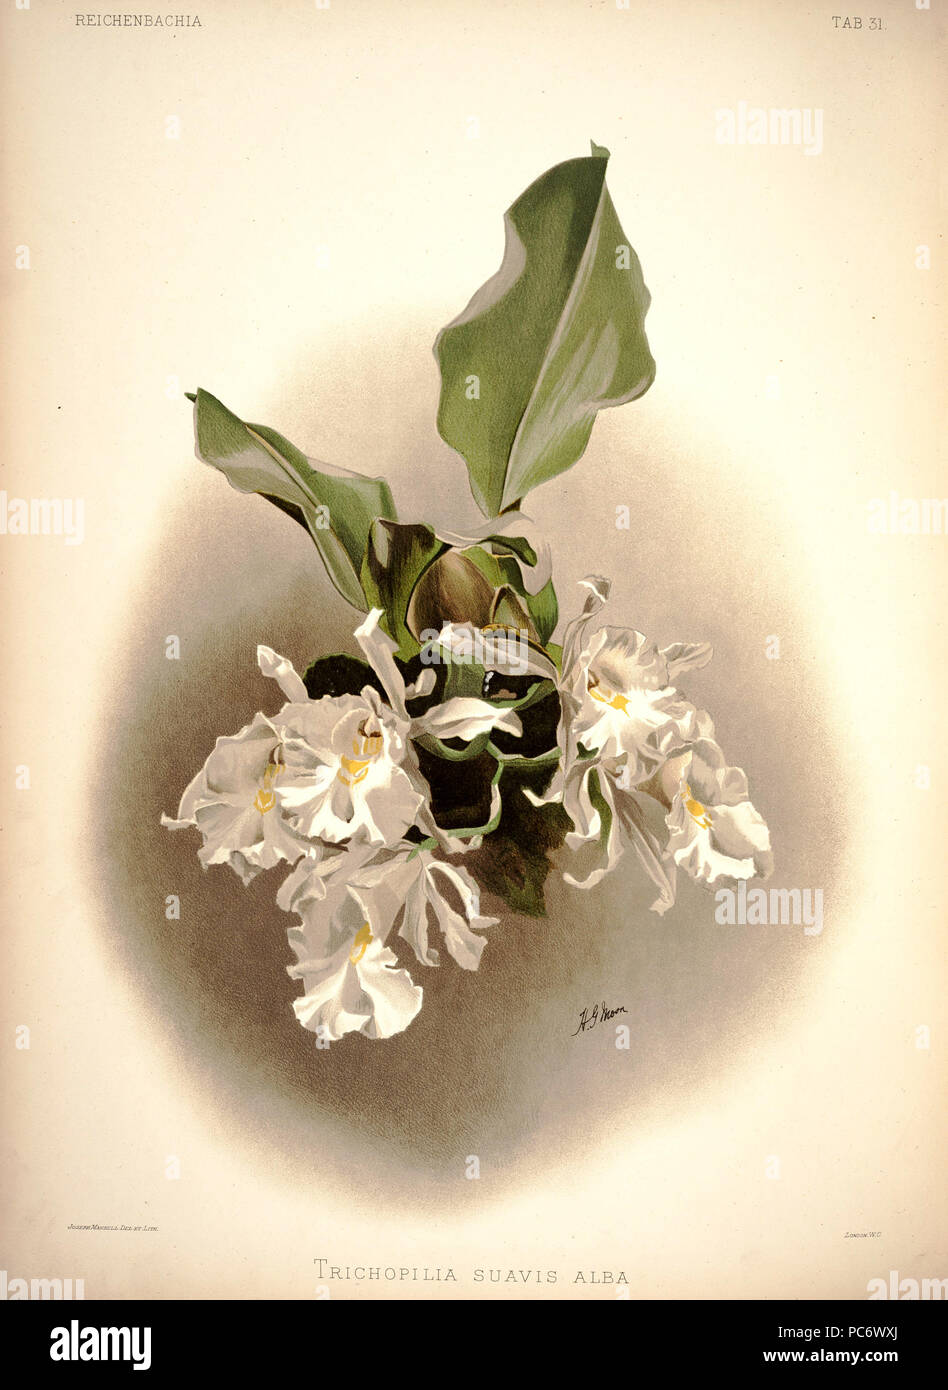 220 Frederick Sander - Reichenbachia I plate 31 (1888) - Trichopilia suavis alba Stock Photo